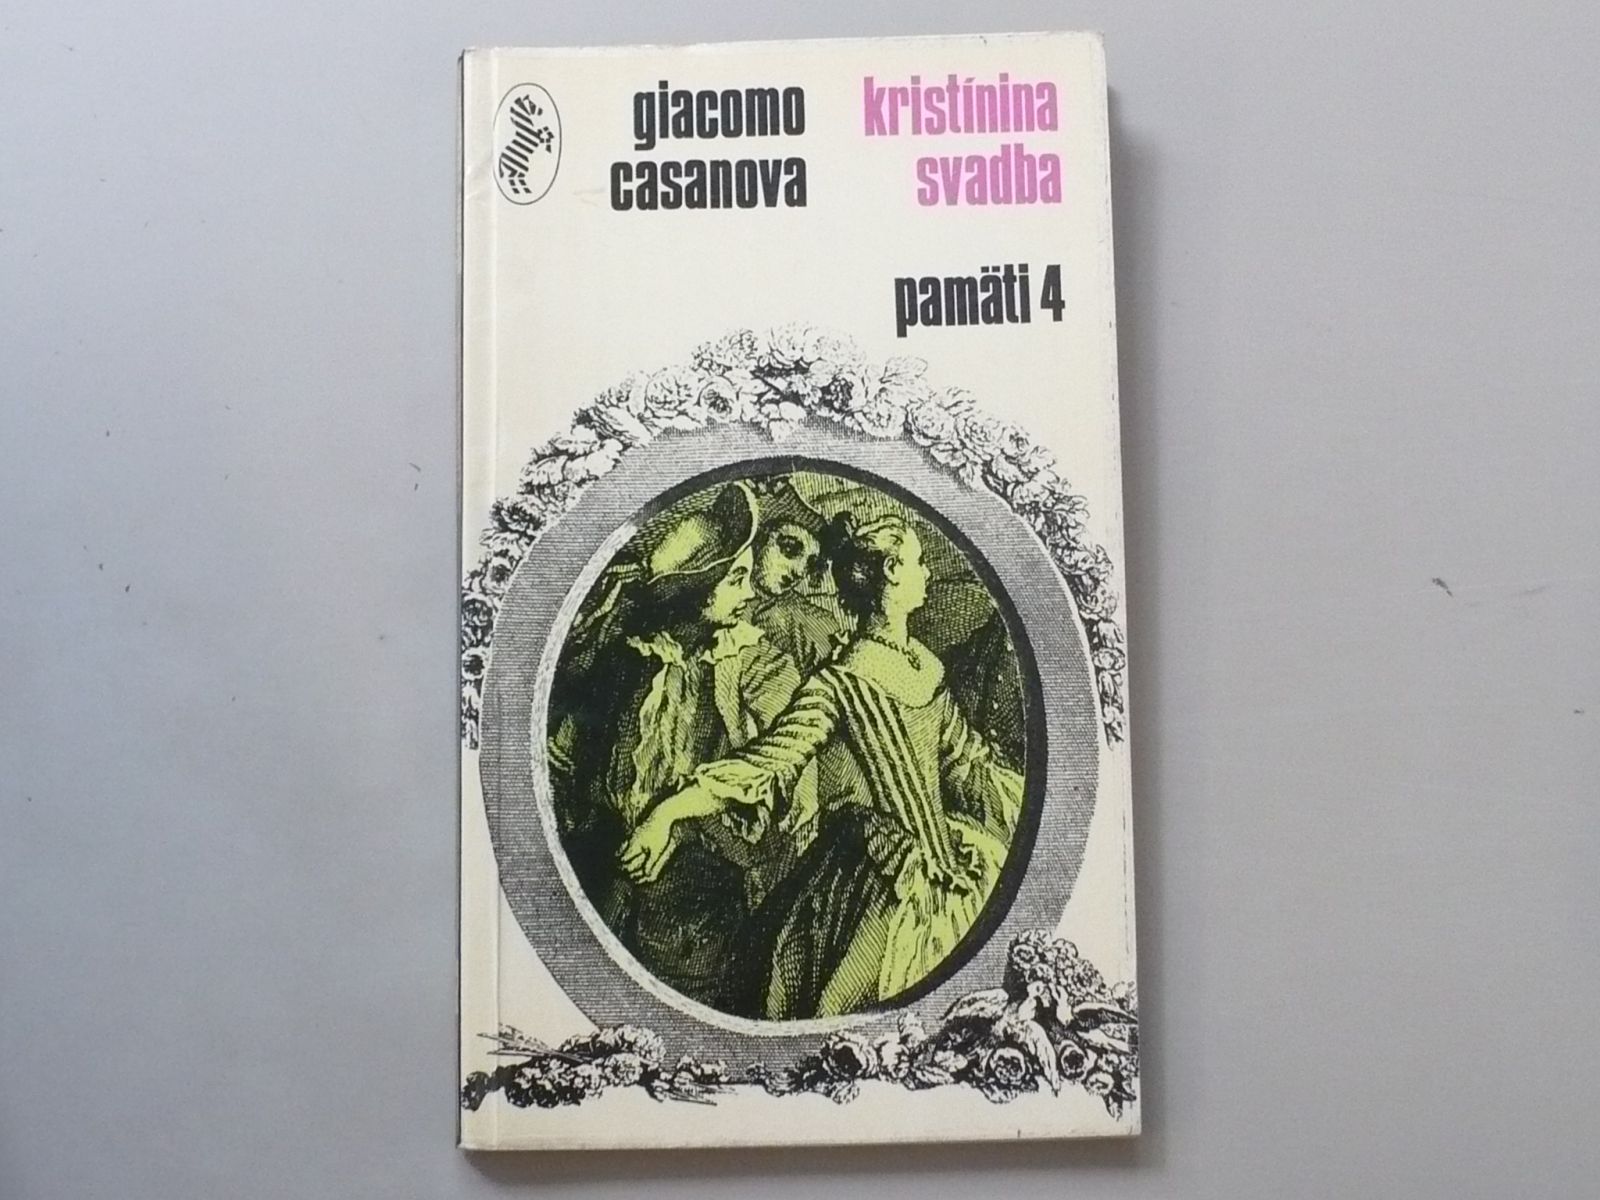 Giacomo Casanova - Kristínina svadba (1970) Pamäti 4, slovensky